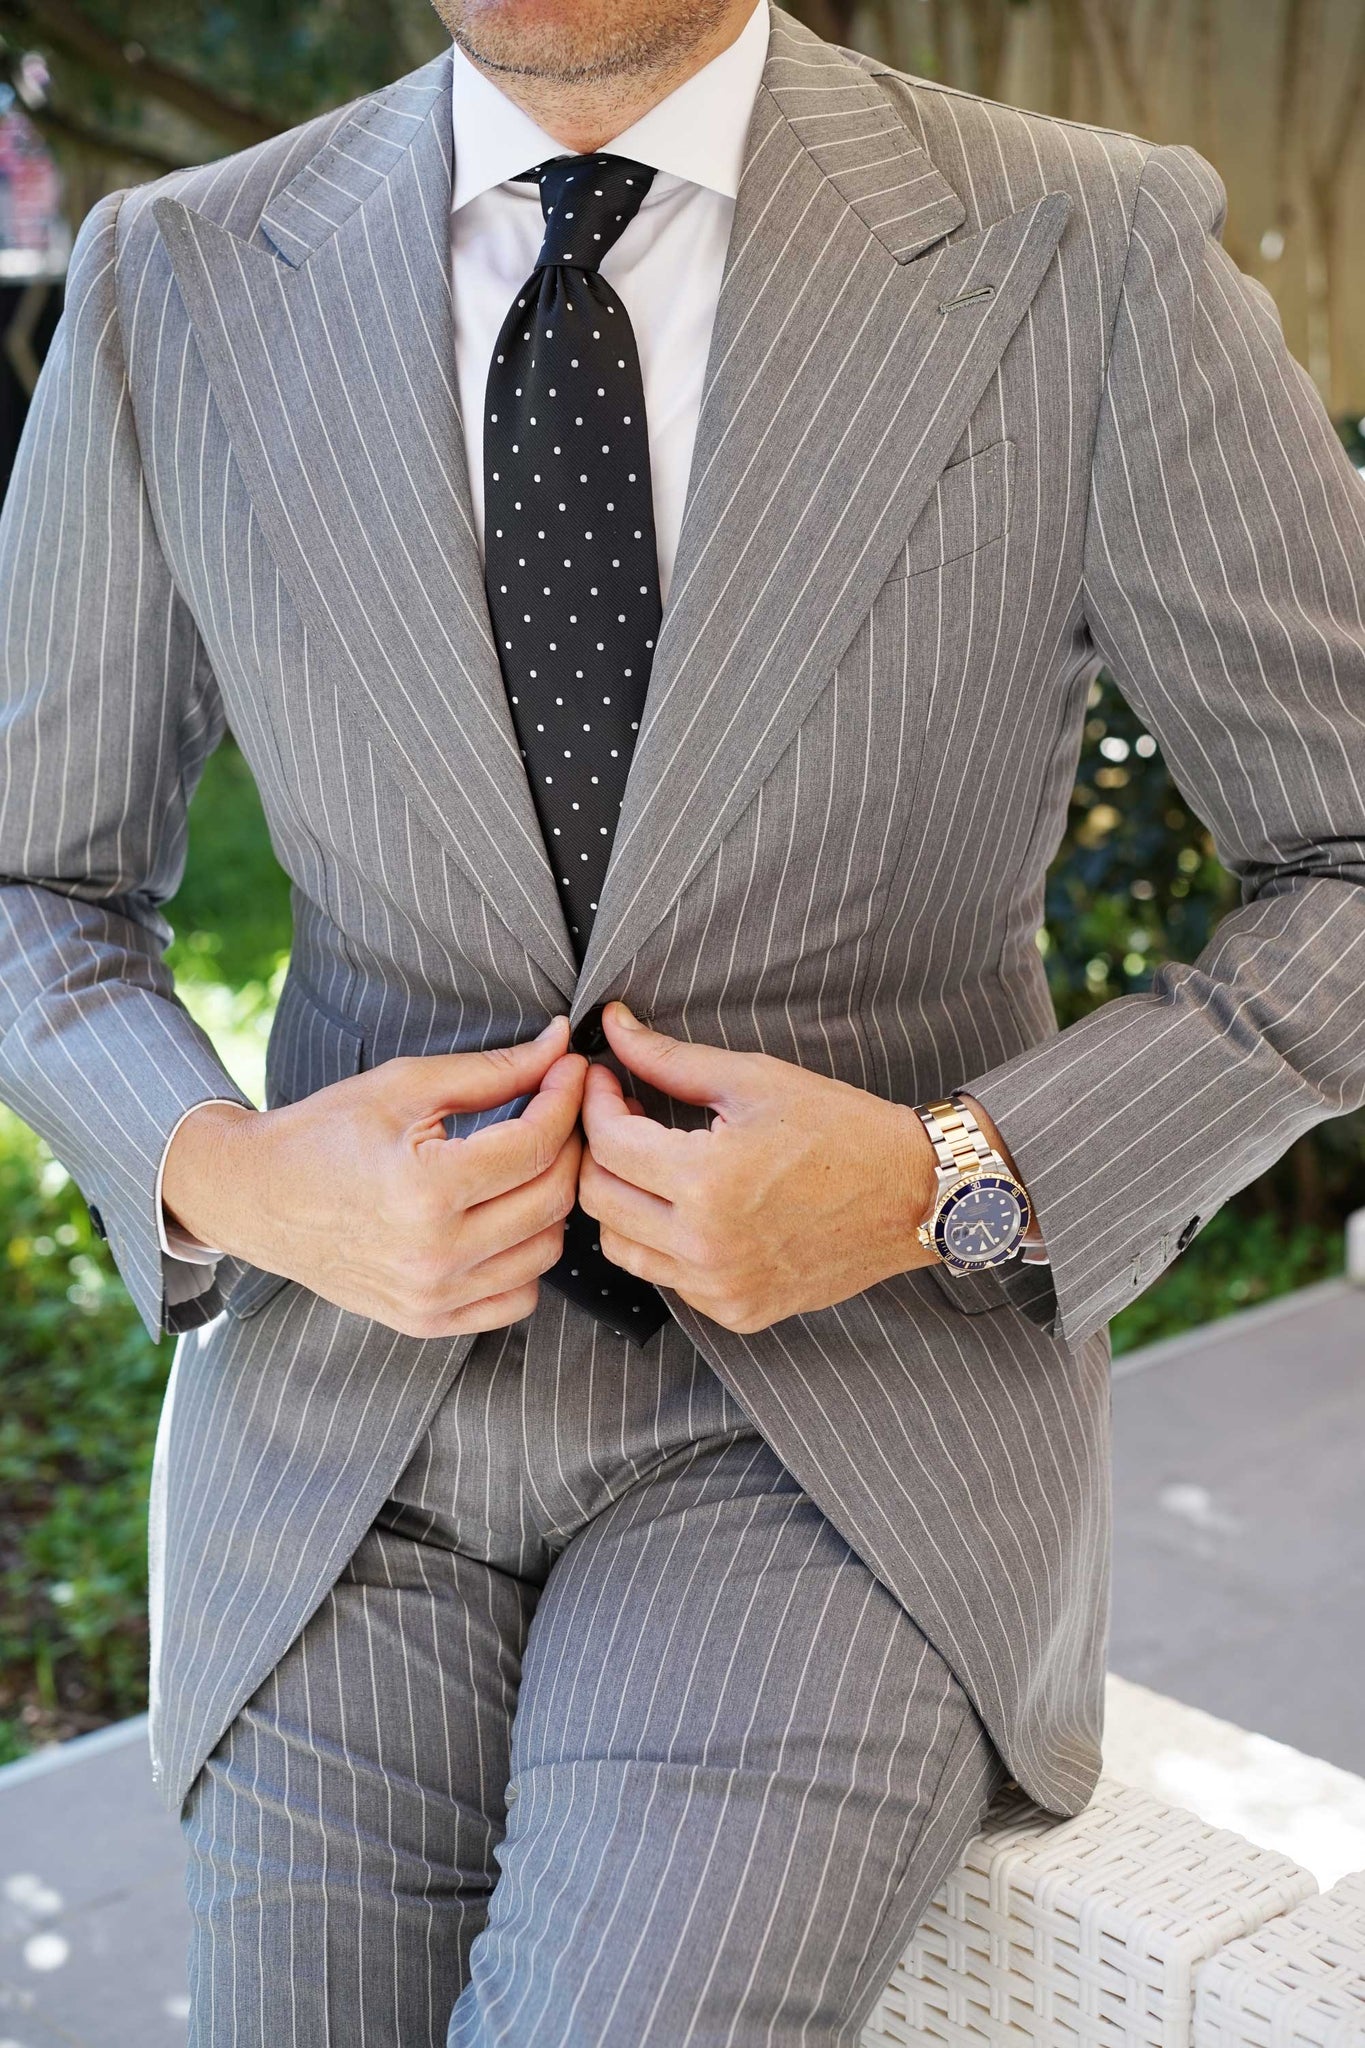 Bond Black Polka Dots Necktie | Business Casual Tie | Men's Cool Ties ...